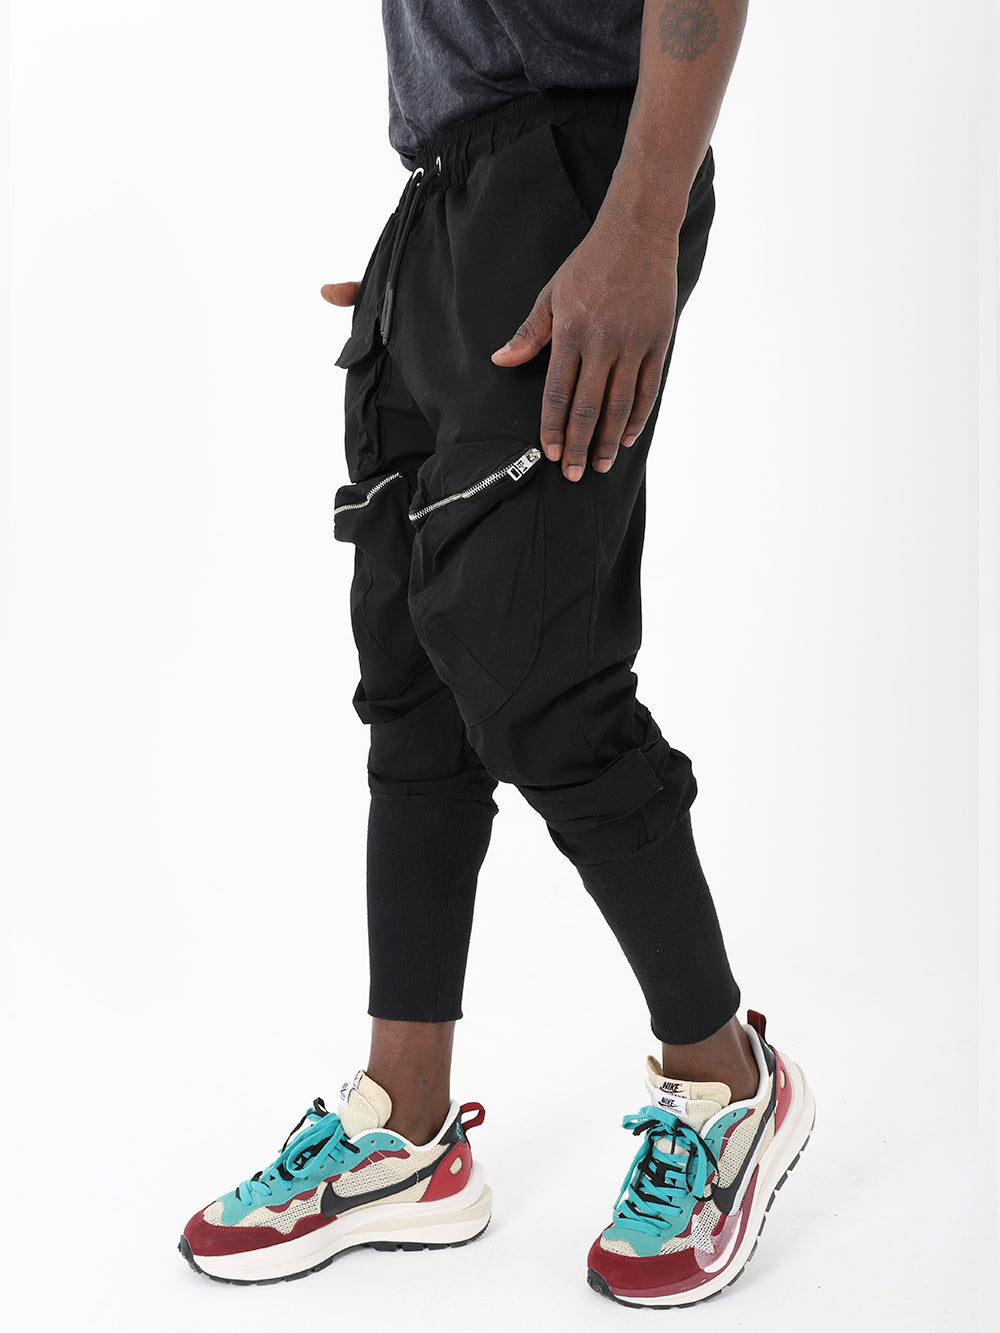 Streetwear Style for Joggers - SERNES Sweatpants Men 